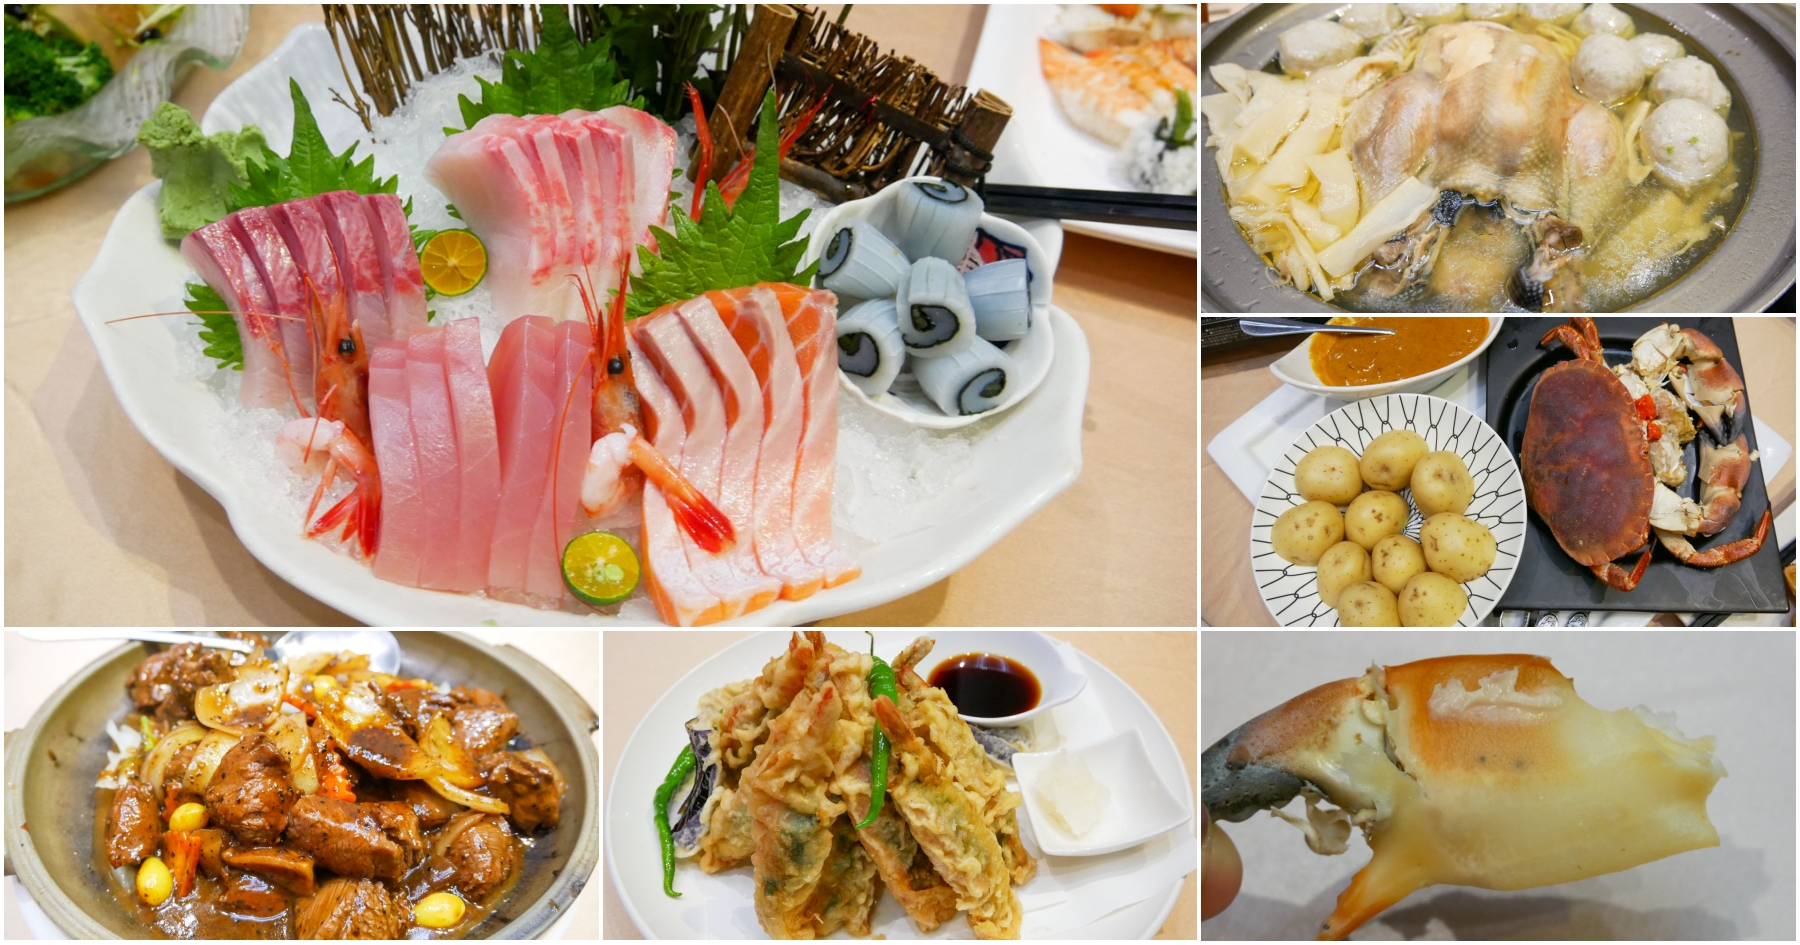 [桃園美食]田川日本料理|風禾公園附近平價日式料理餐廳、好停車多人桌菜聚餐選擇